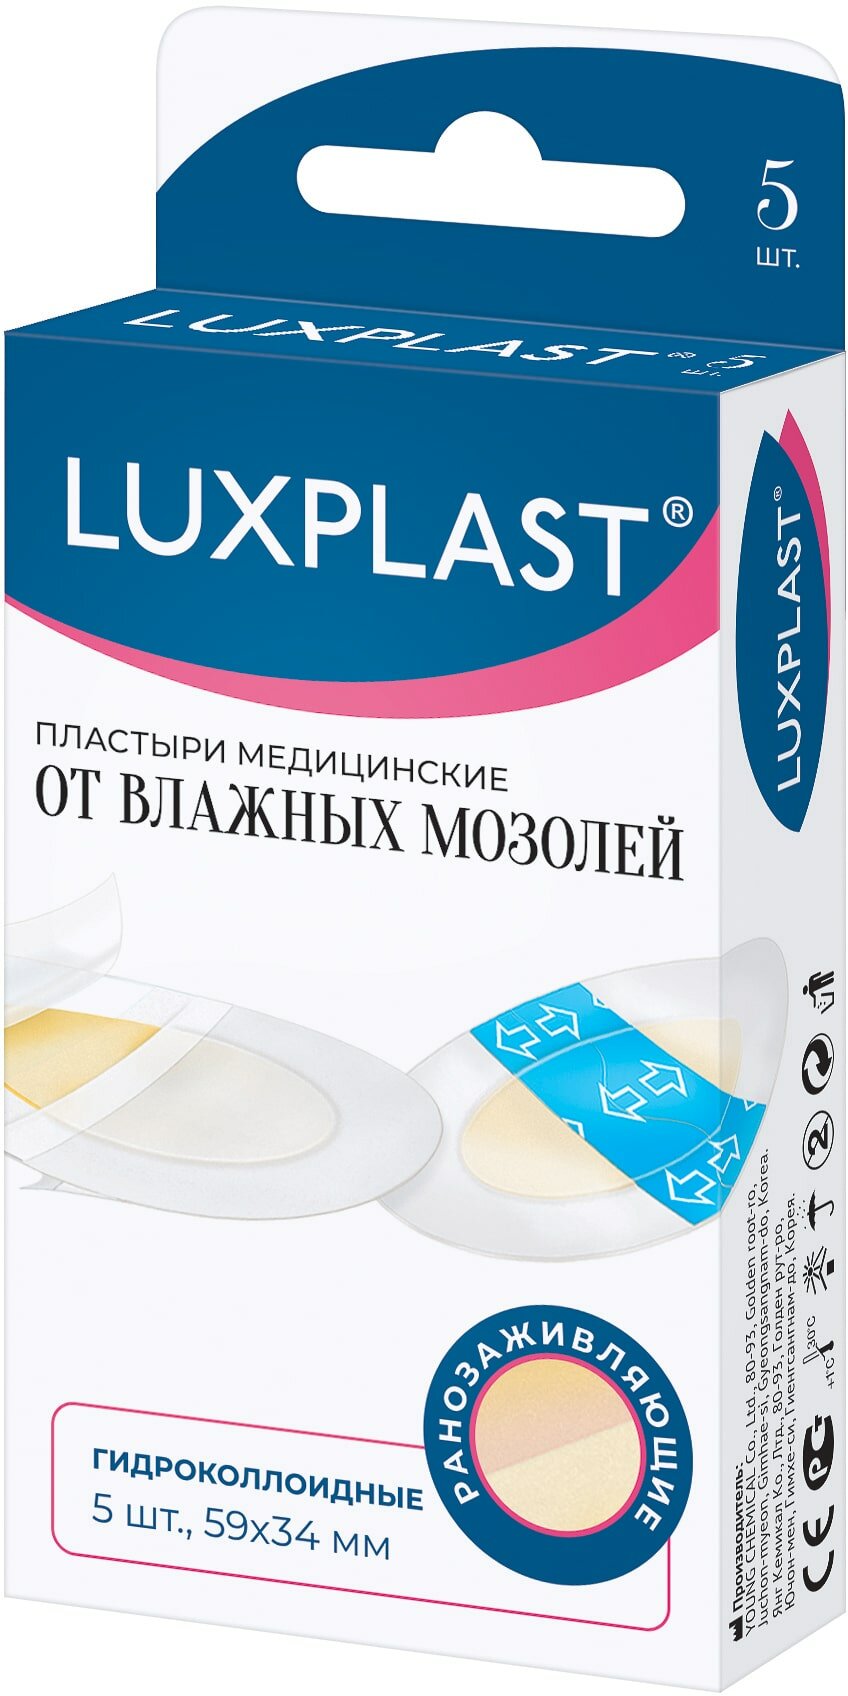 Пластыри LUXPLAST медицинские гидроколлоидные от влажных мозолей 5 шт